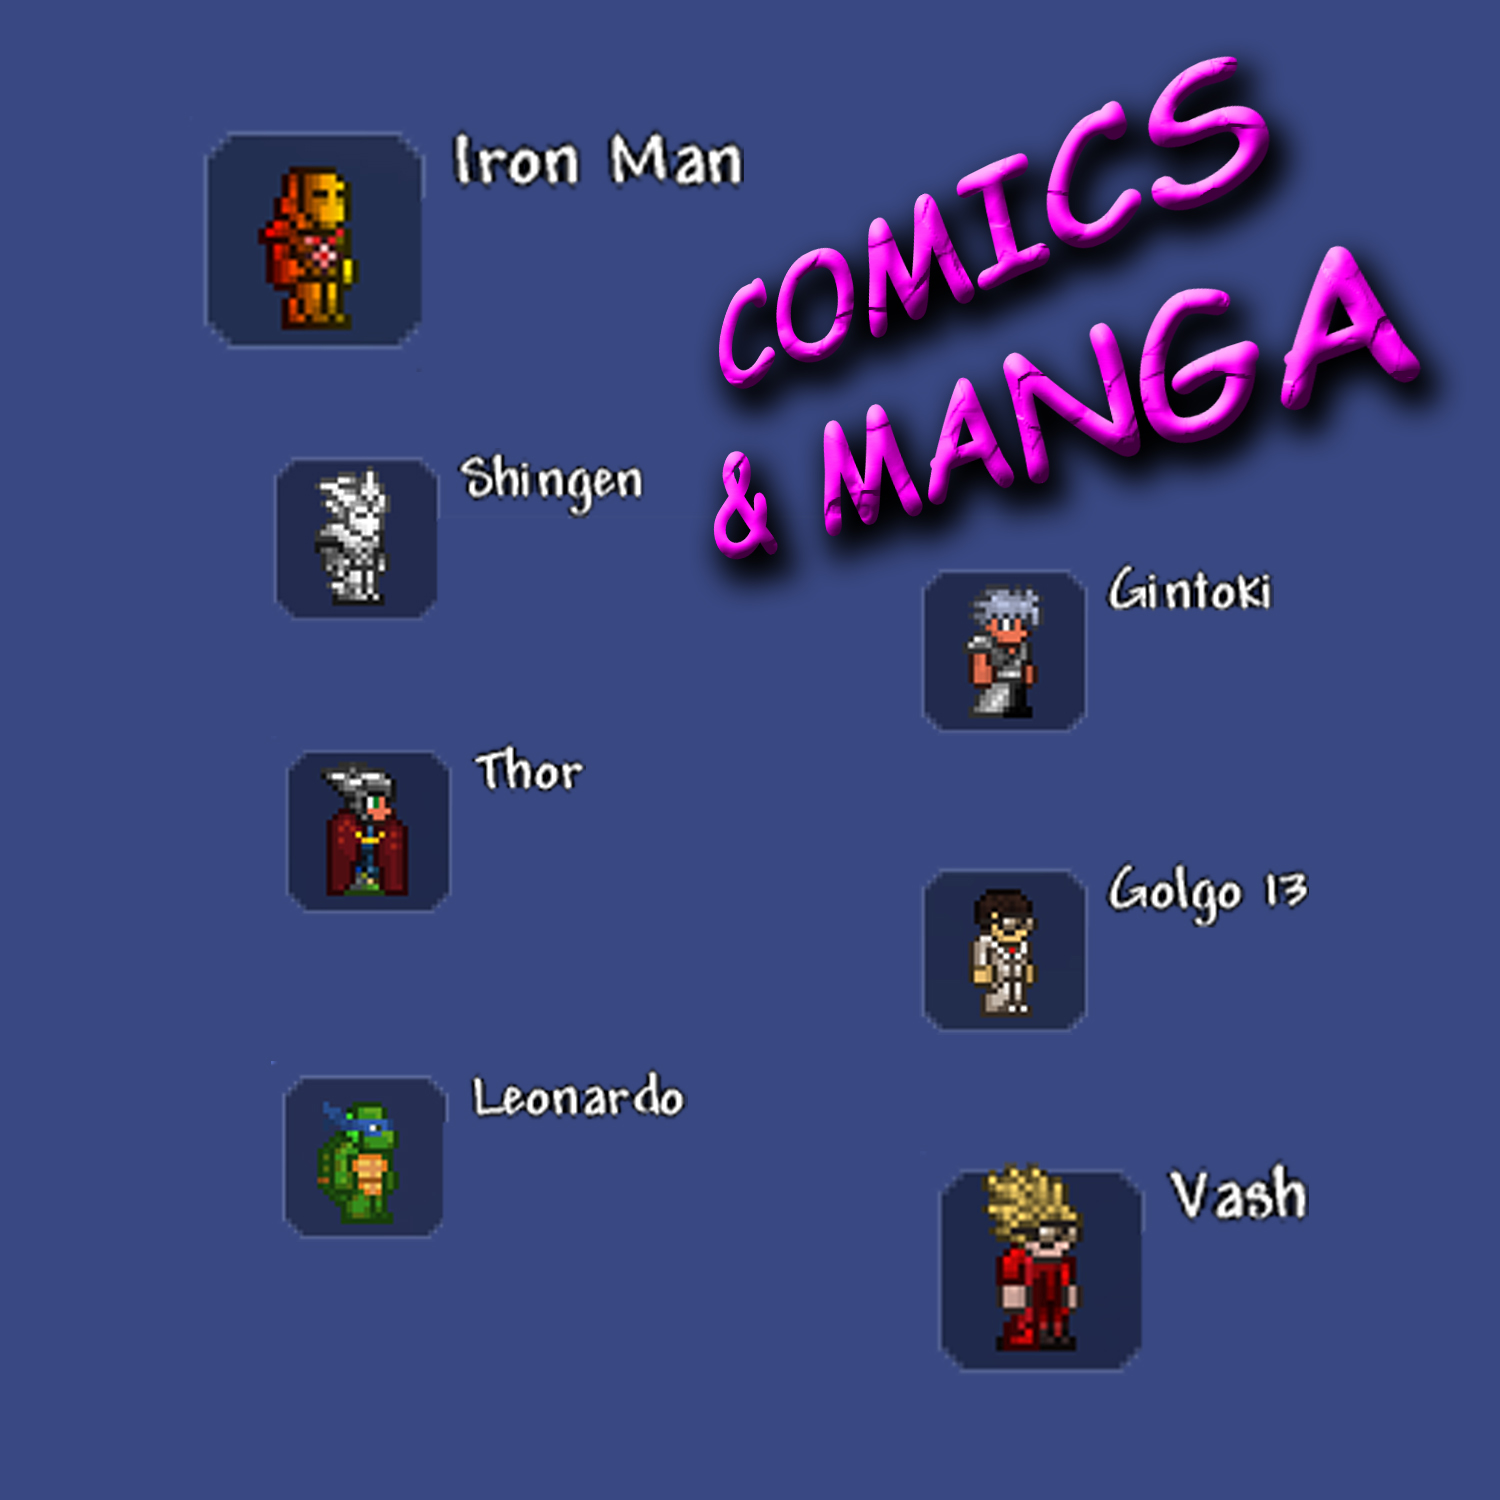 Comics & Manga